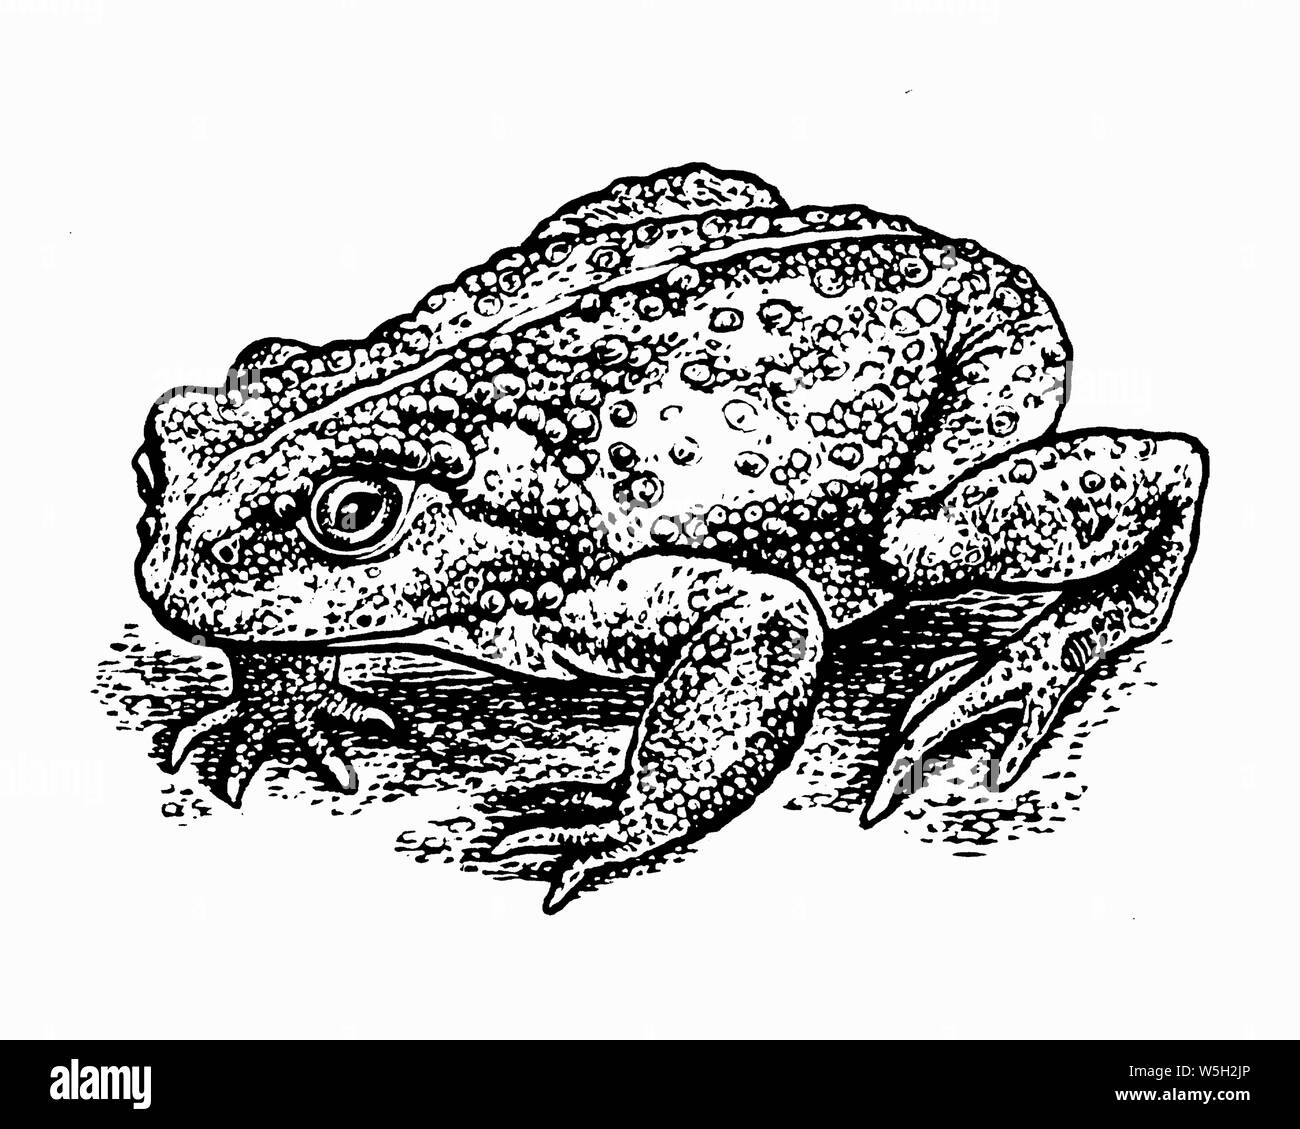 Gravure noir et blanc scraperboard de toad Banque D'Images